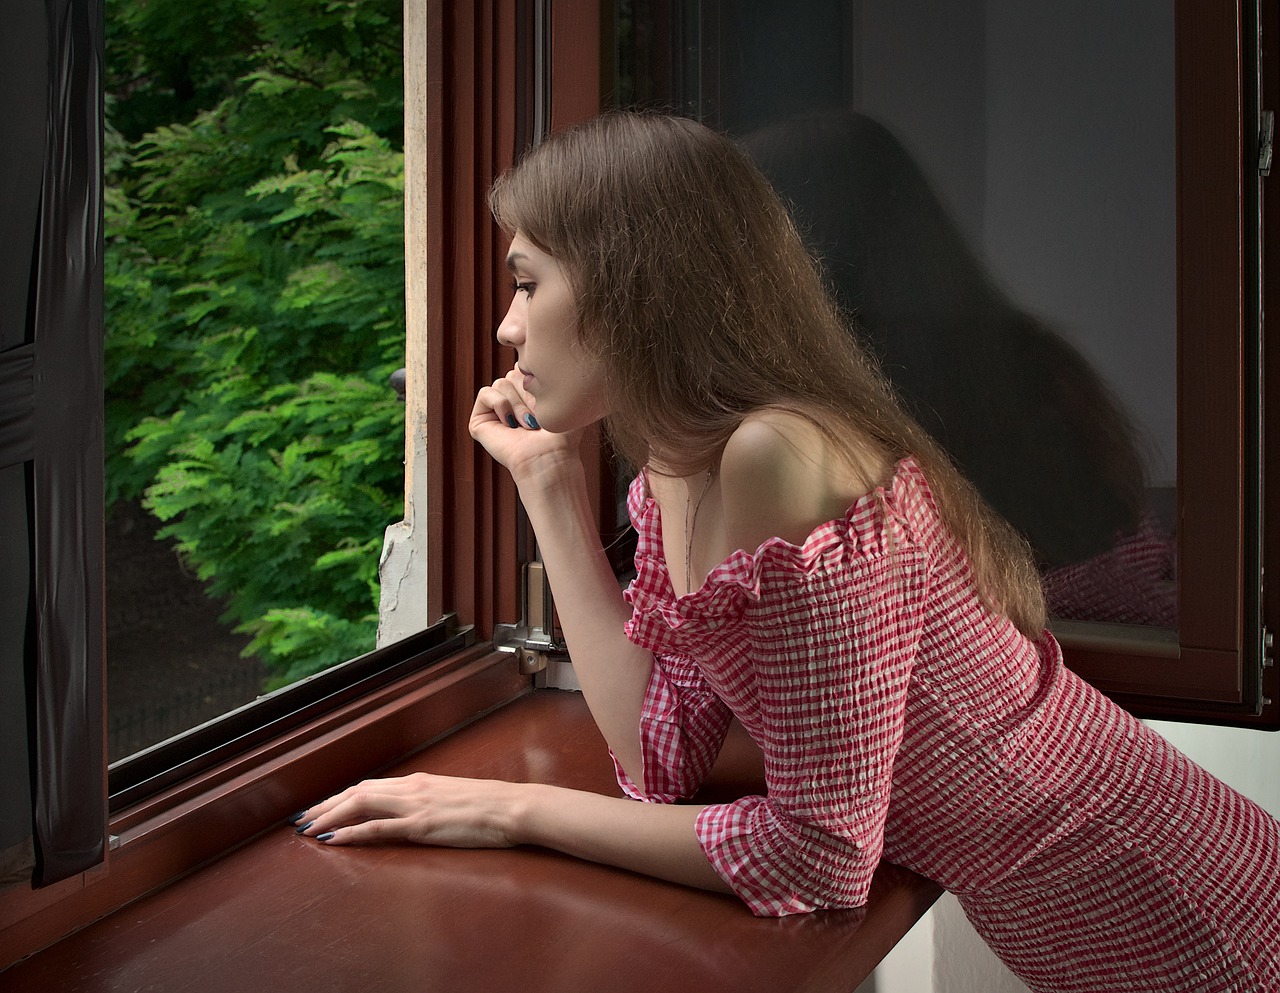 Junge Frau lehnt am Fenster | Quelle: Pixabay